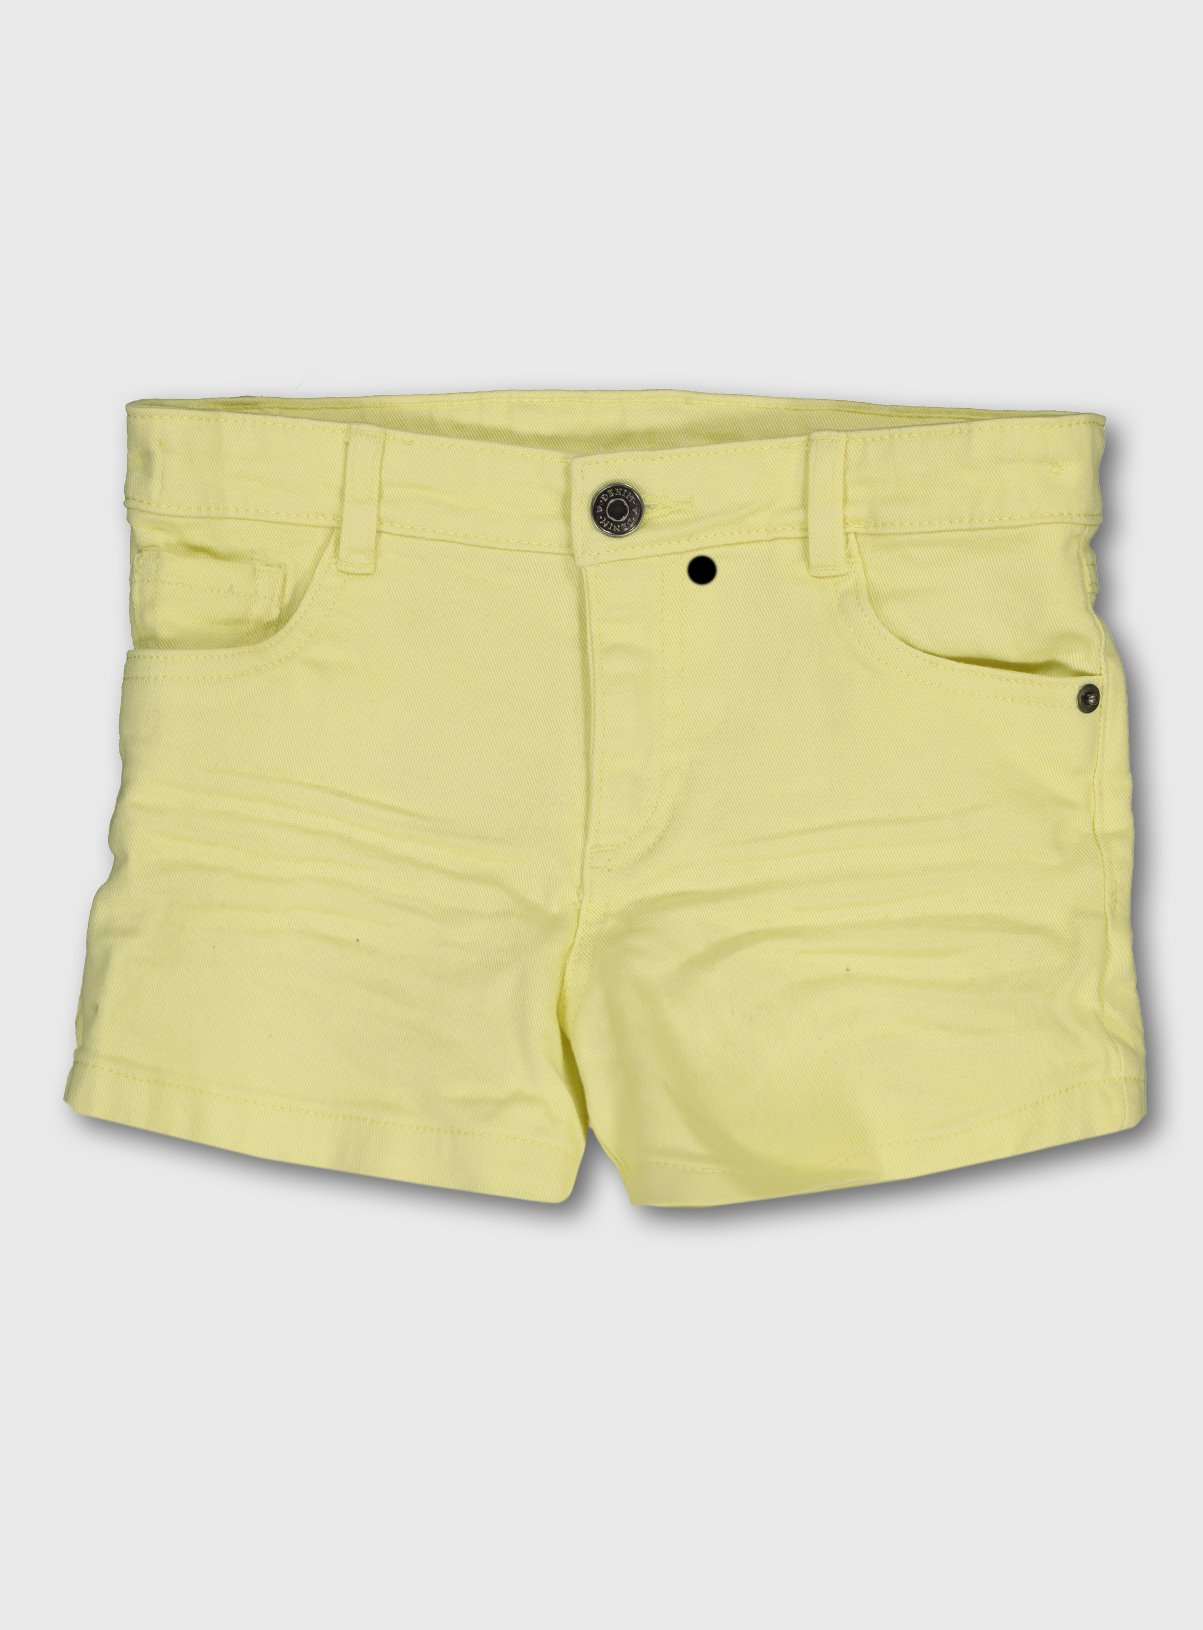 neon yellow denim shorts